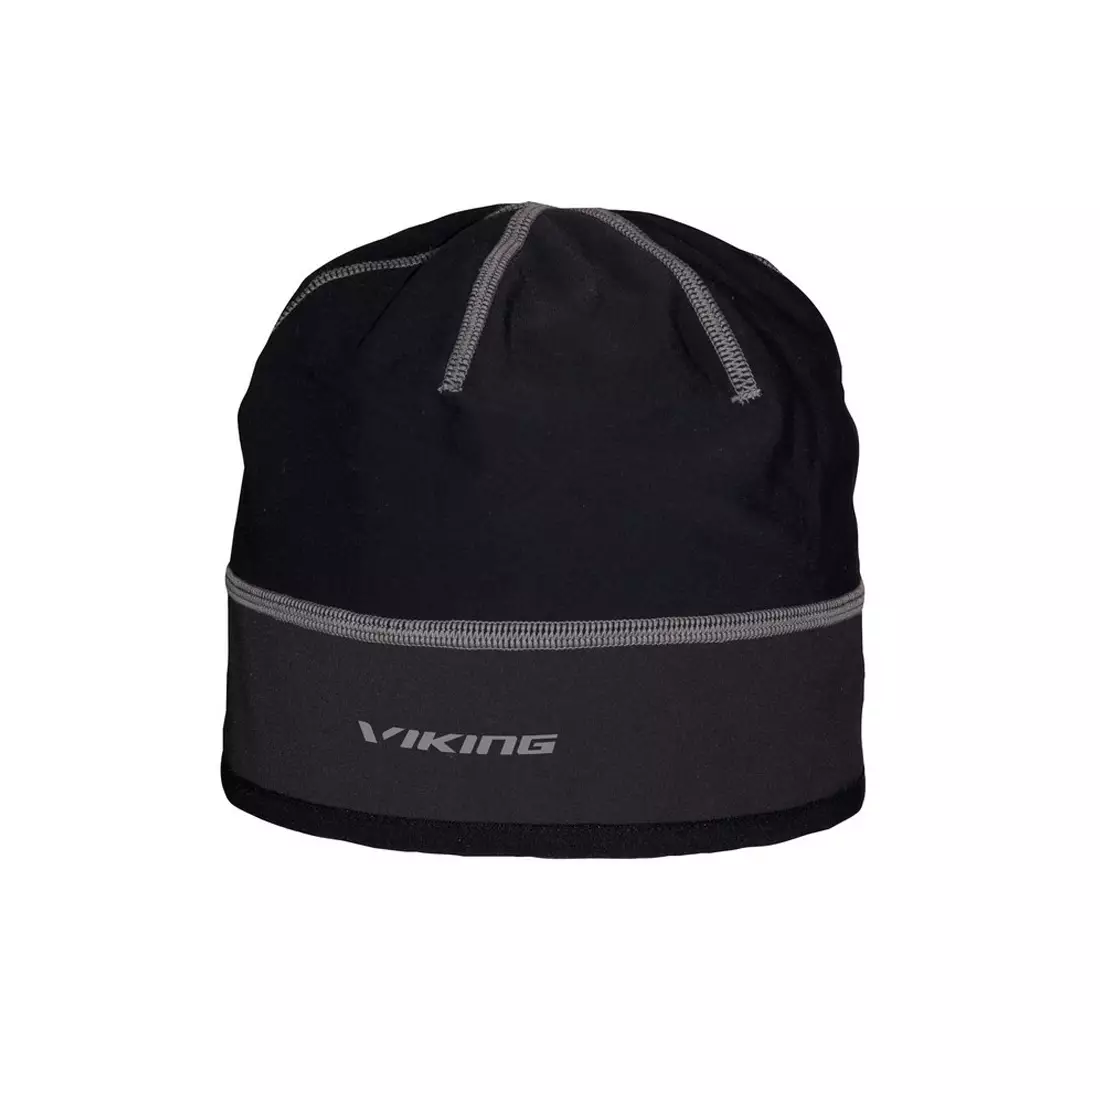 VIKING pălărie universală de iarnă Palmer GORE-TEX Infinium black 215/16/2016/08/58